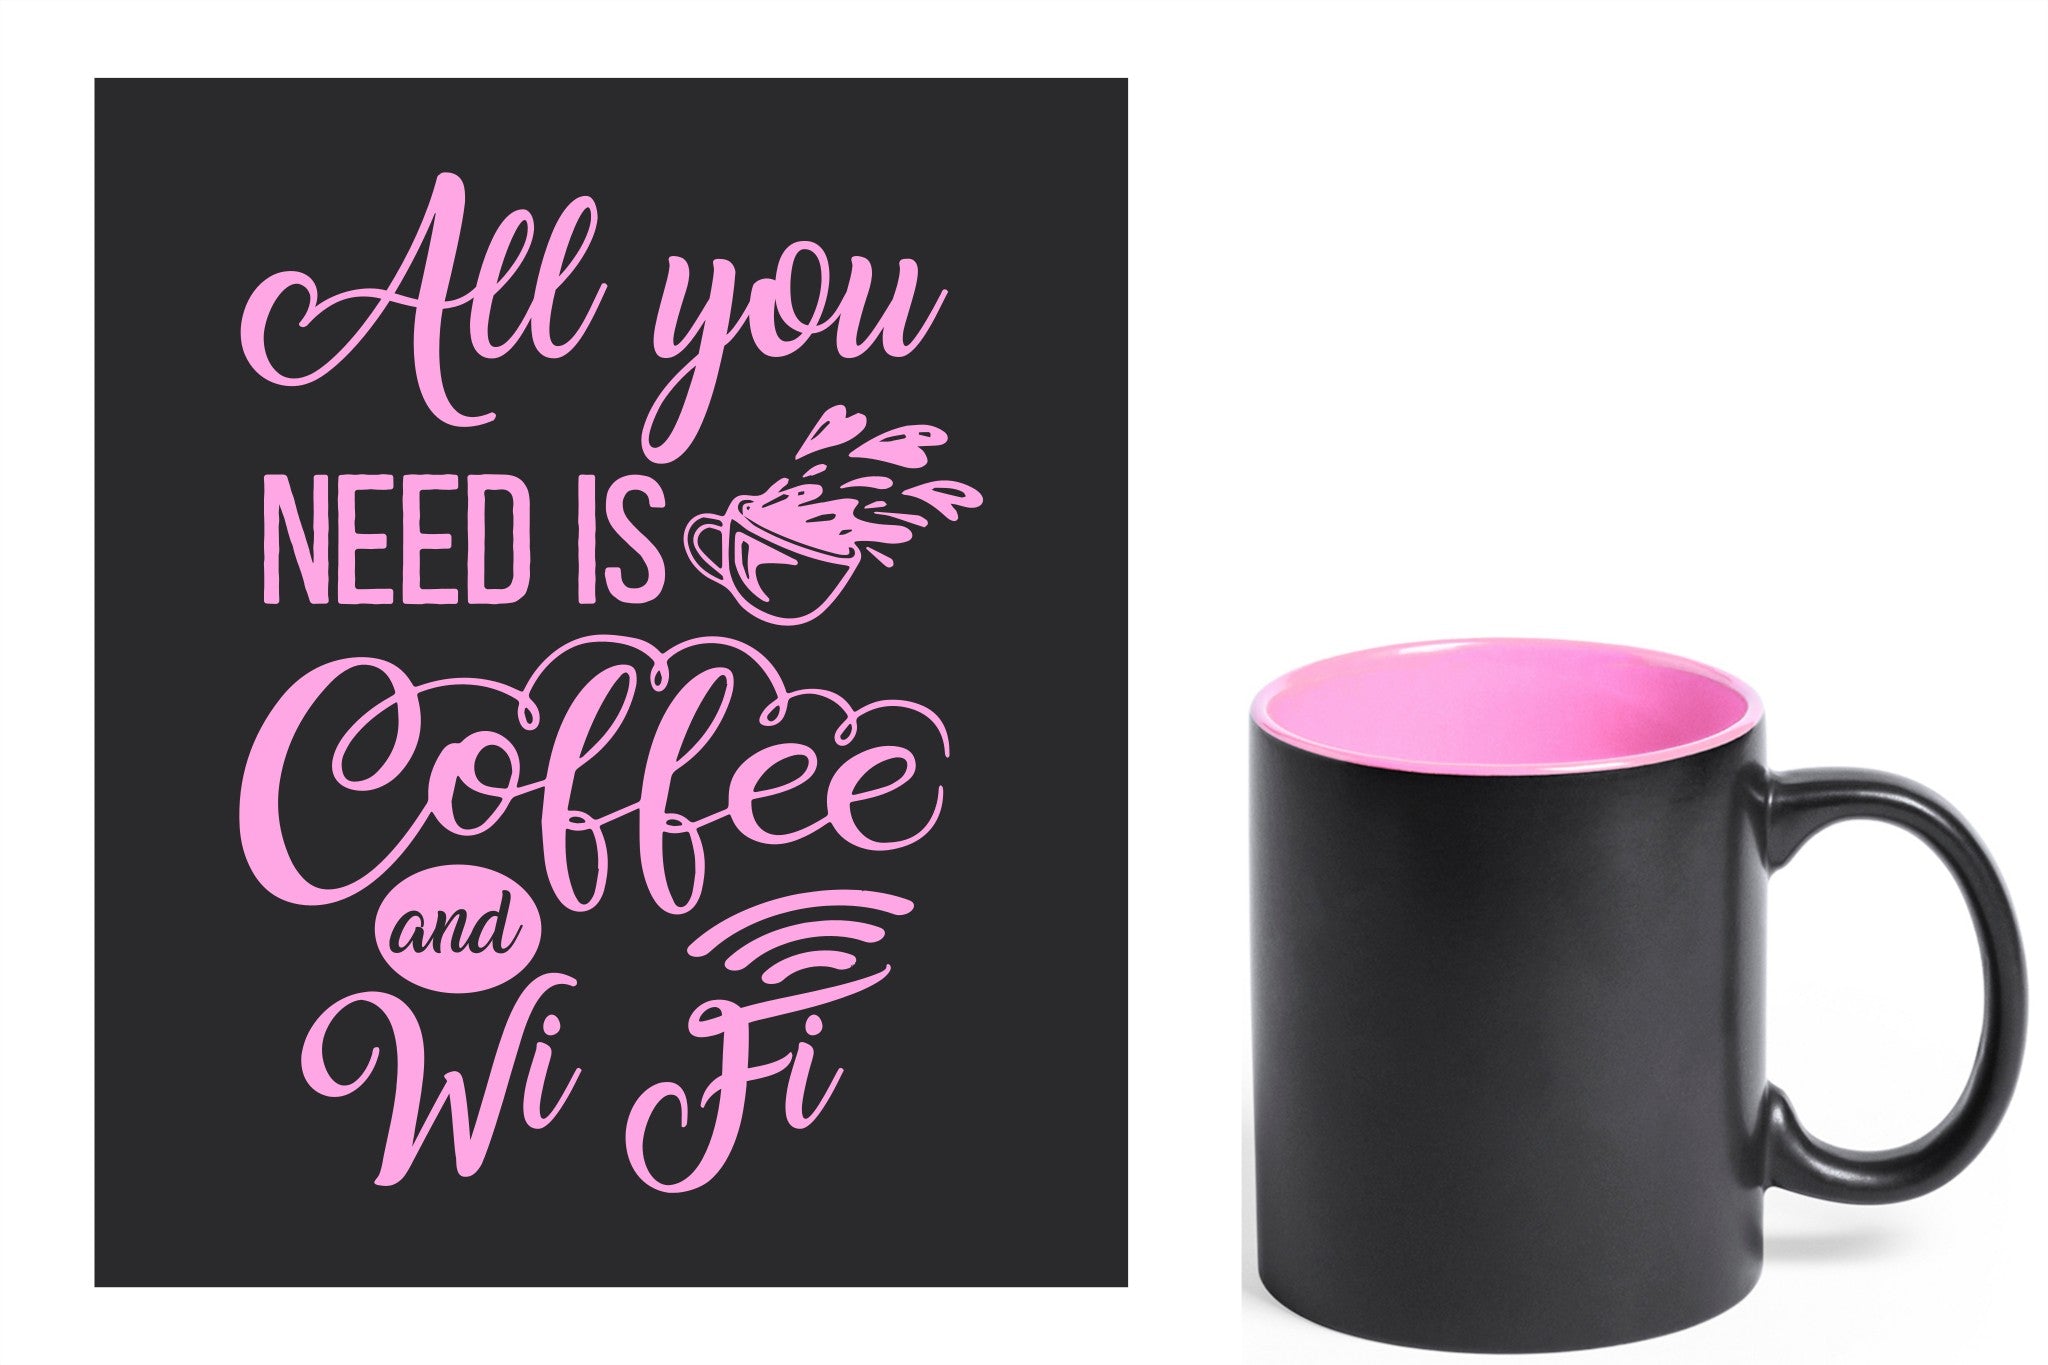 zwarte keramische mok met roze gravure  'All you need is coffee and wifi'.